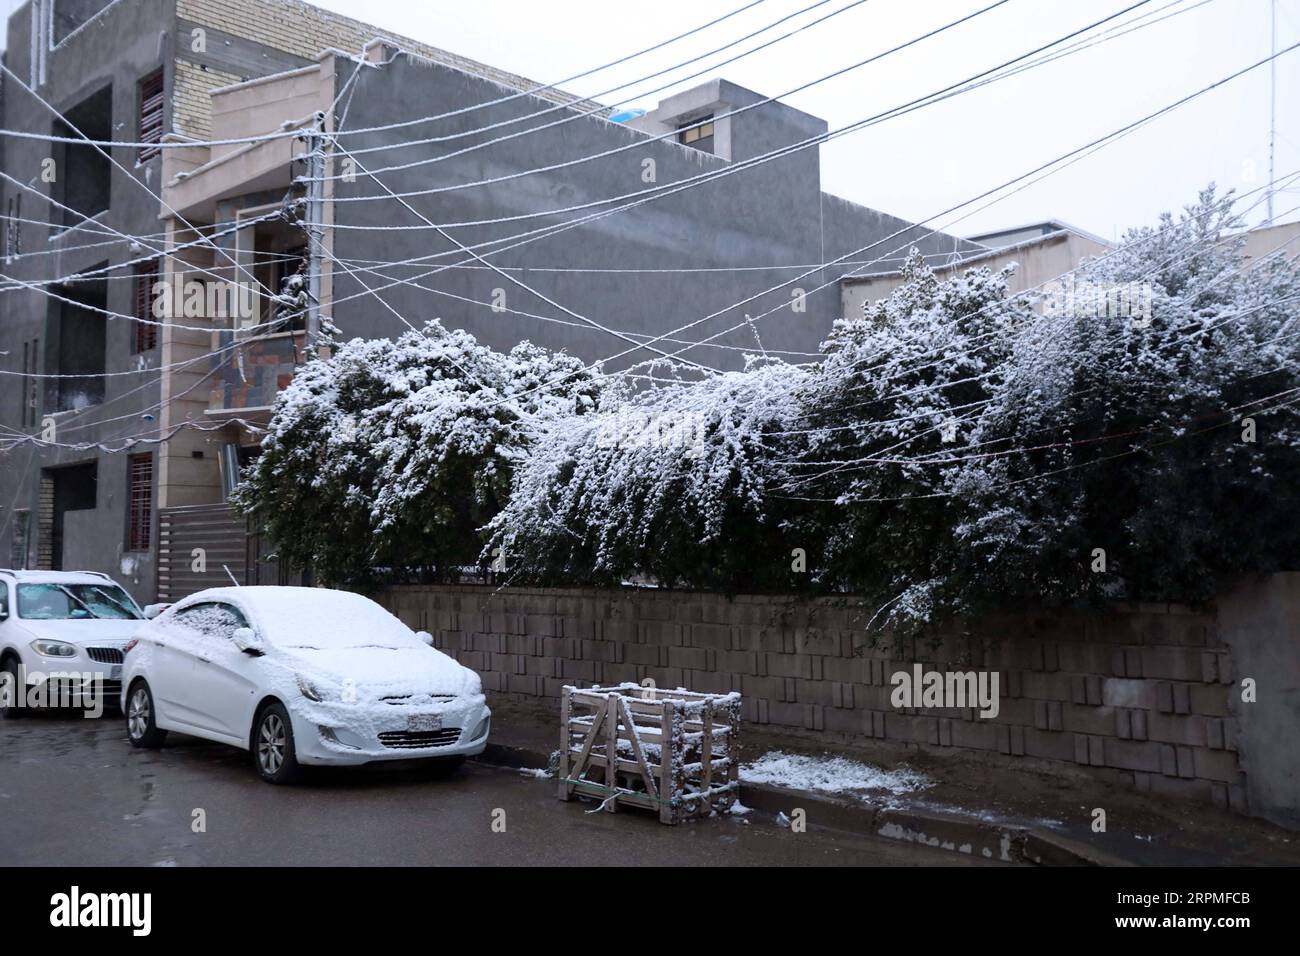 200211 -- BAGHDAD, 11 febbraio 2020 Xinhua -- foto scattata l'11 febbraio 2020 mostra la neve a Baghdad, Iraq. Molte persone nella capitale irachena di Baghdad si sono svegliate presto martedì per assistere a una rara nevicata in città. La neve in Iraq è comunemente vista nella parte settentrionale del paese, in particolare nelle zone montane. Per la maggior parte dei cittadini di Baghdad, è raro per loro vedere la neve. Baghdad ha assistito a nevicate nel gennaio 2008 per la prima volta in oltre 100 anni. Xinhua/Khalil Dawood IRAQ-BAGHDAD-SNOW PUBLICATIONxNOTxINxCHN Foto Stock